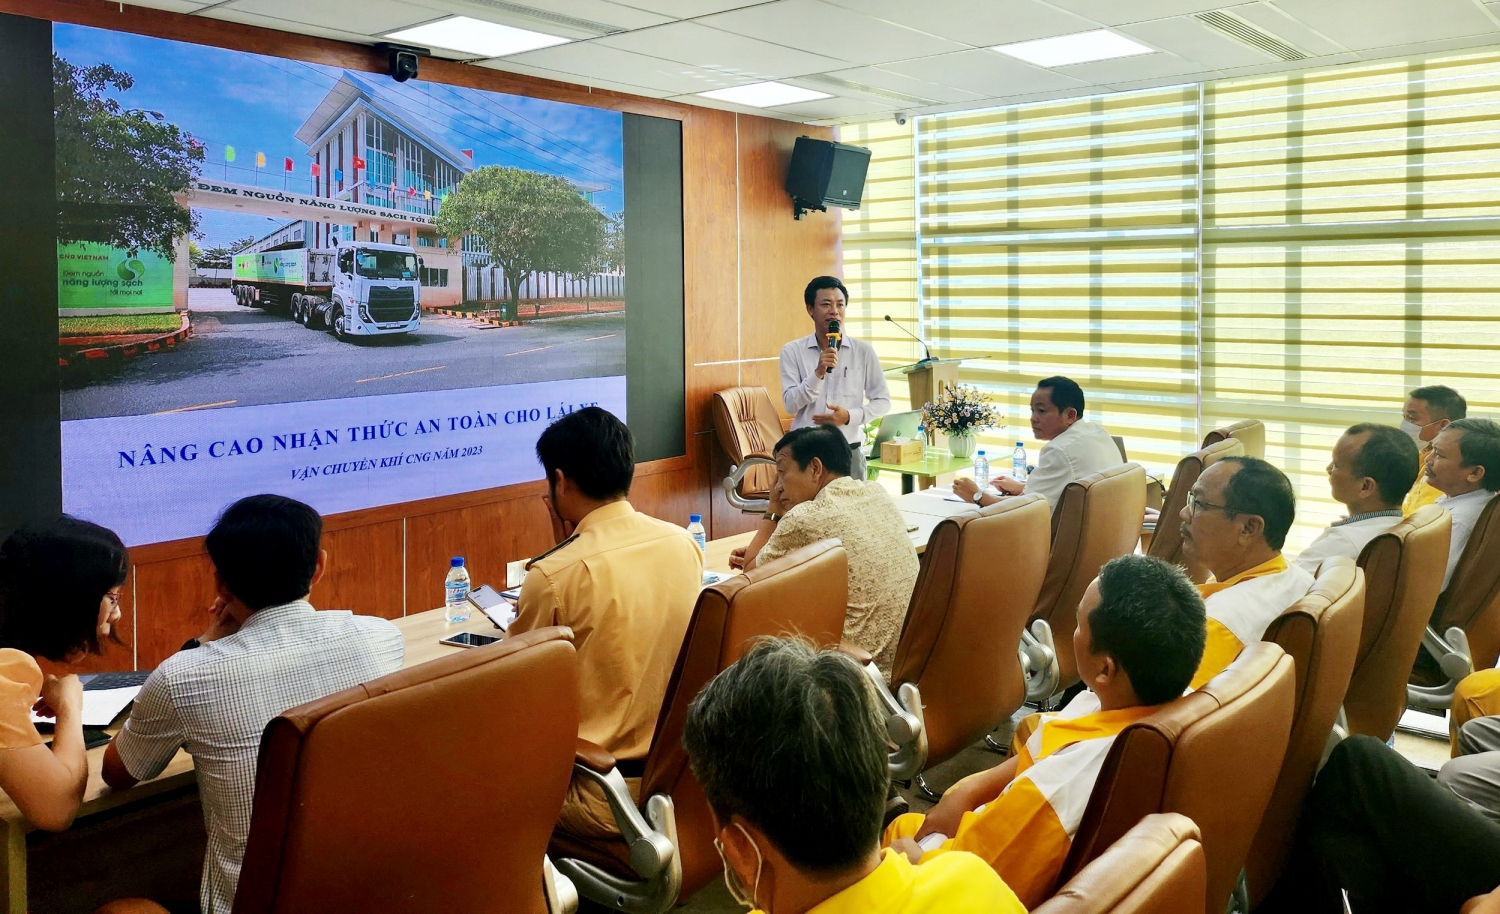 Khoá học “ Nâng cao nhận thức an toàn trong vận chuyển khí thiên nhiên nén CNG năm 2023” do CNG Việt Nam tổ chức